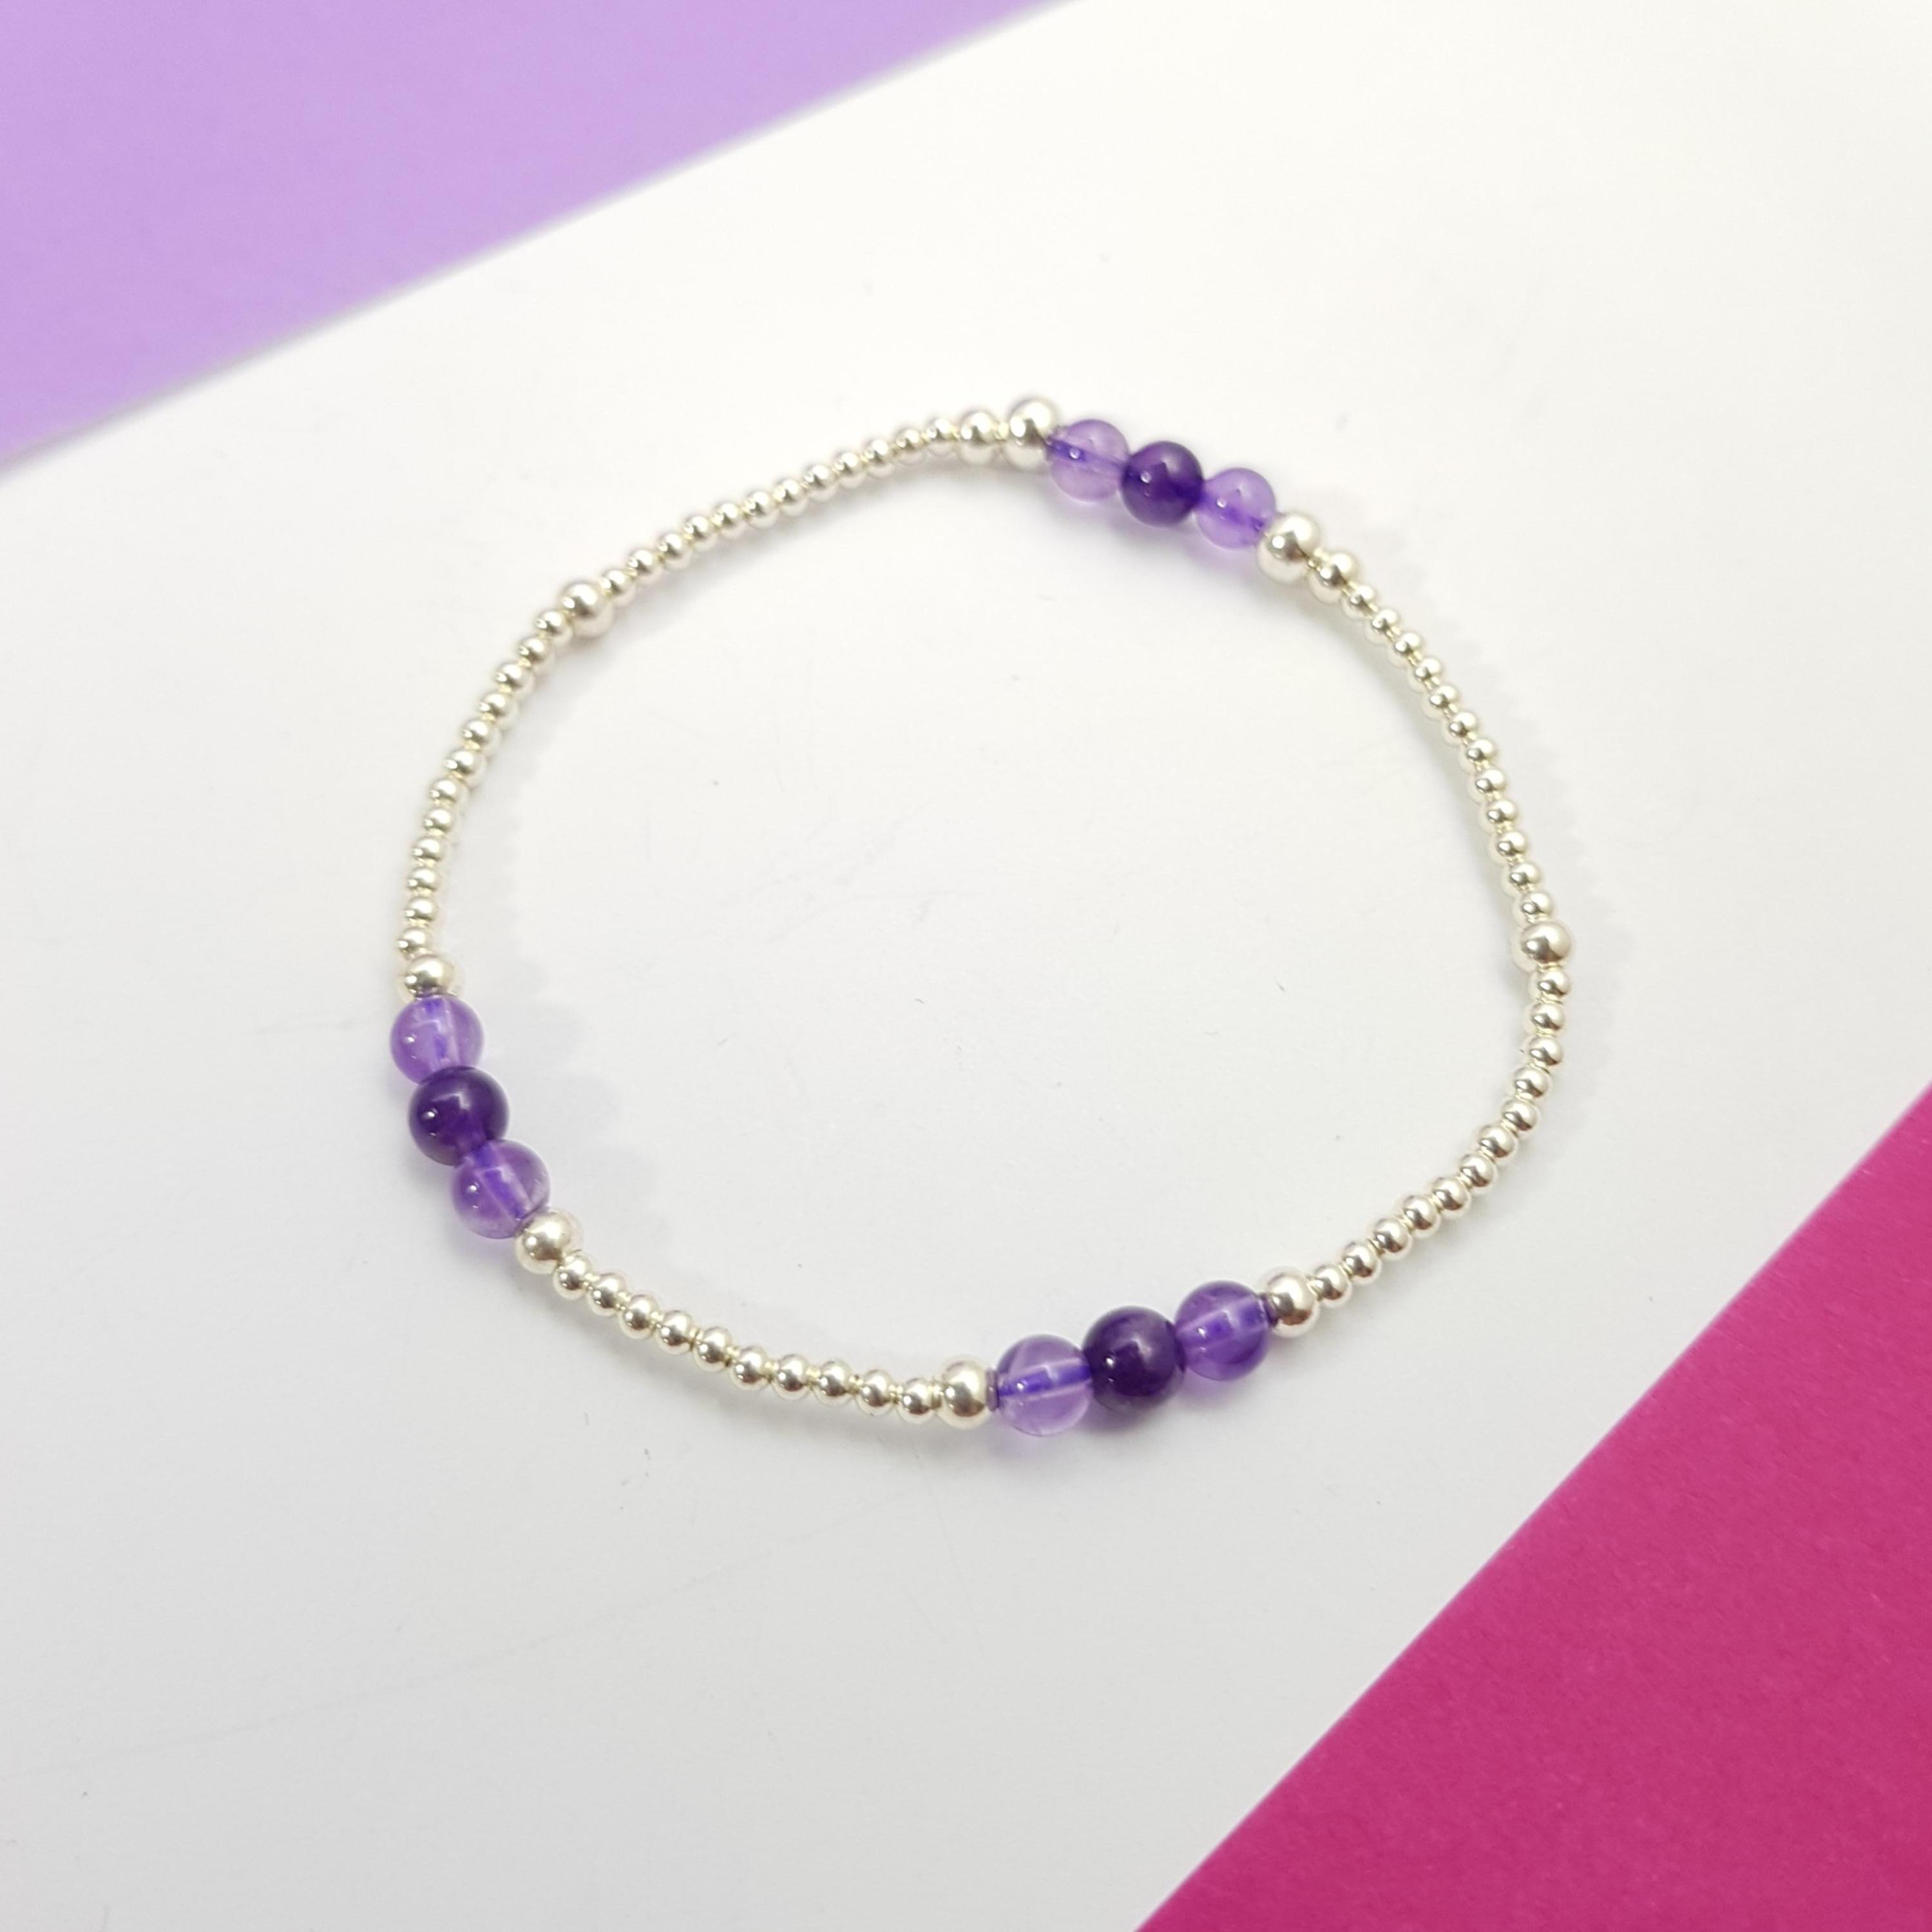 喜孜孜小石子~深淺色紫水晶純銀彈性手環